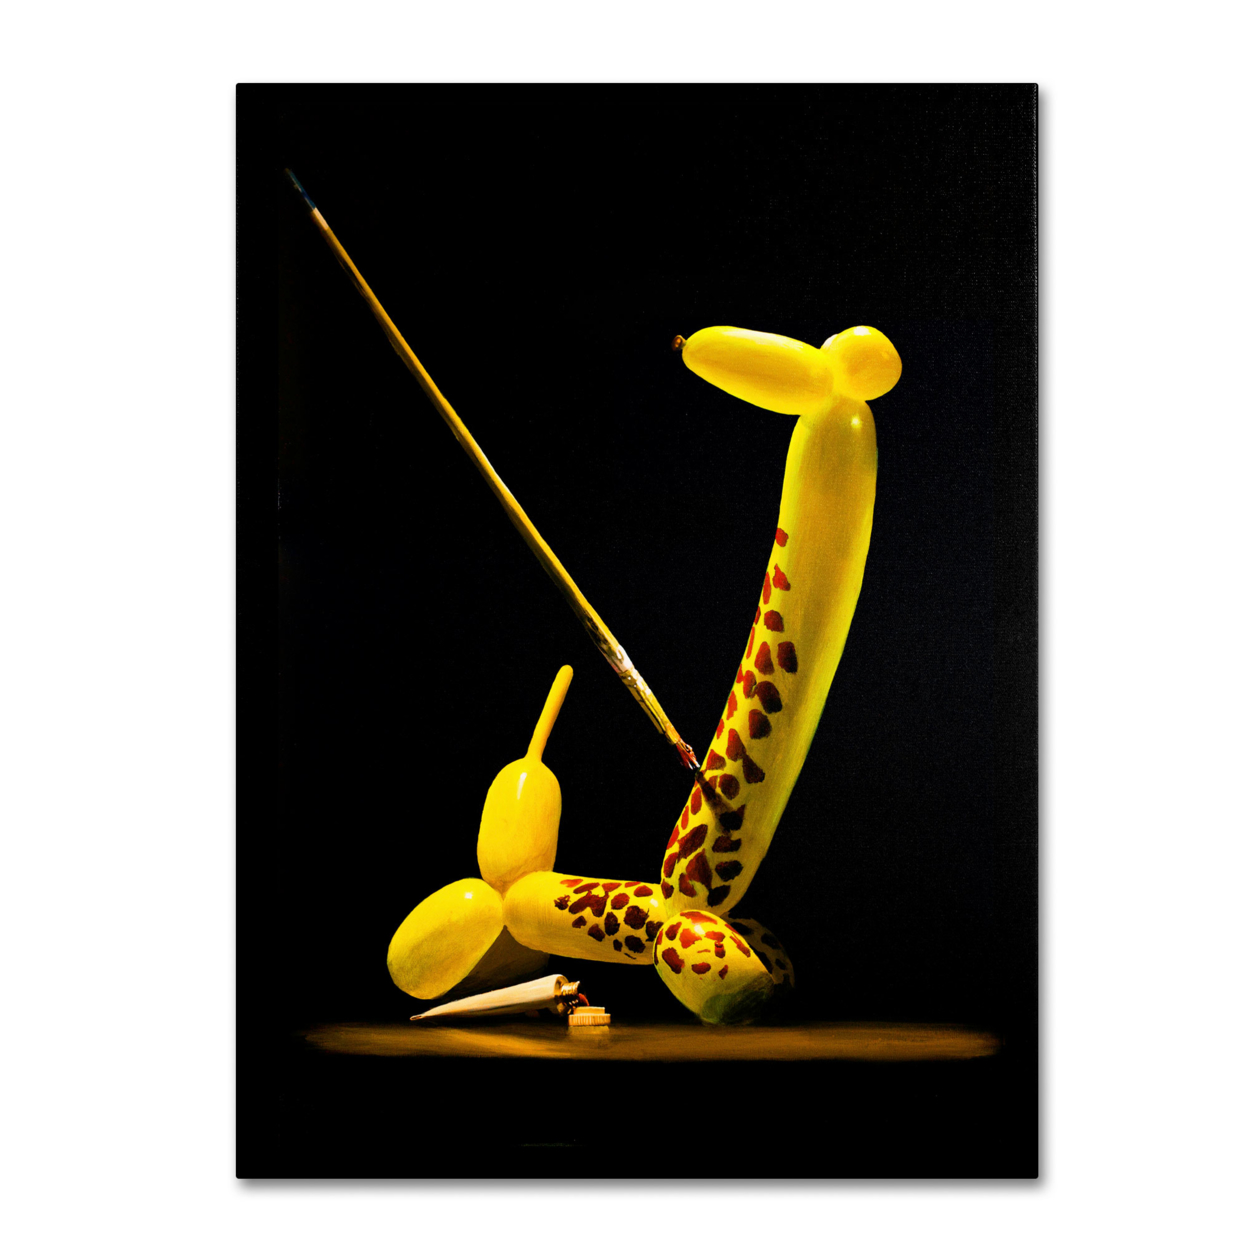 Roderick Stevens 'Balloon Giraffe' Canvas Art 18 X 24